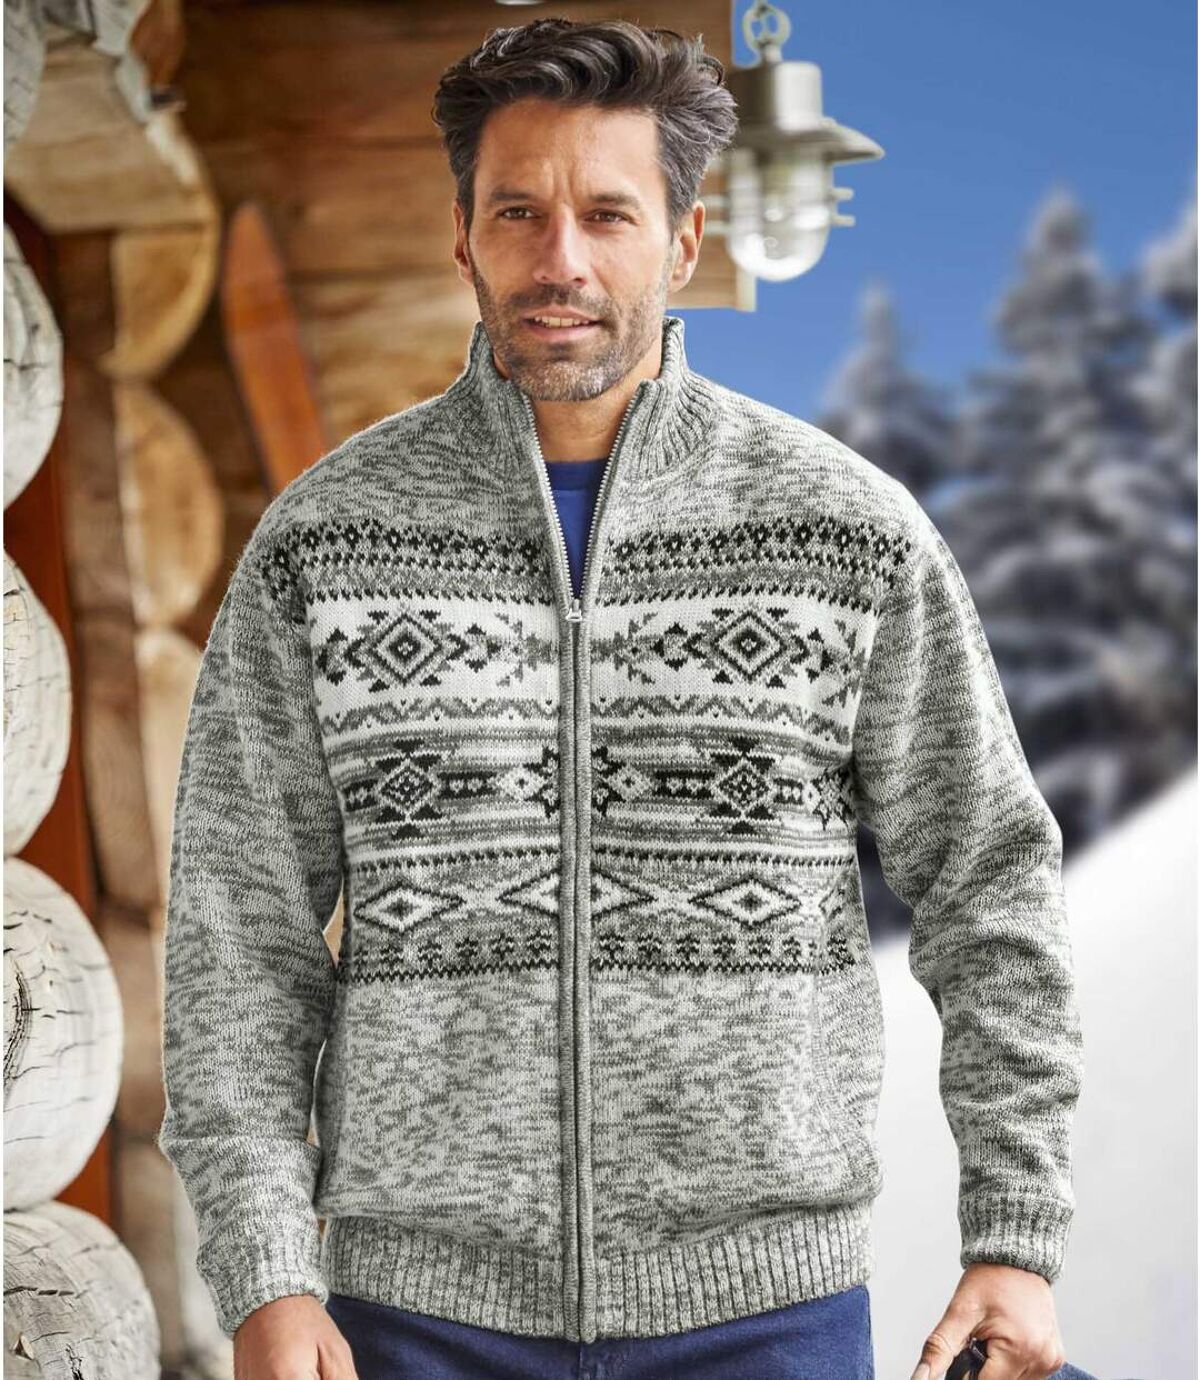 Pletený sveter na zips so žakárovým motívom Atlas For Men